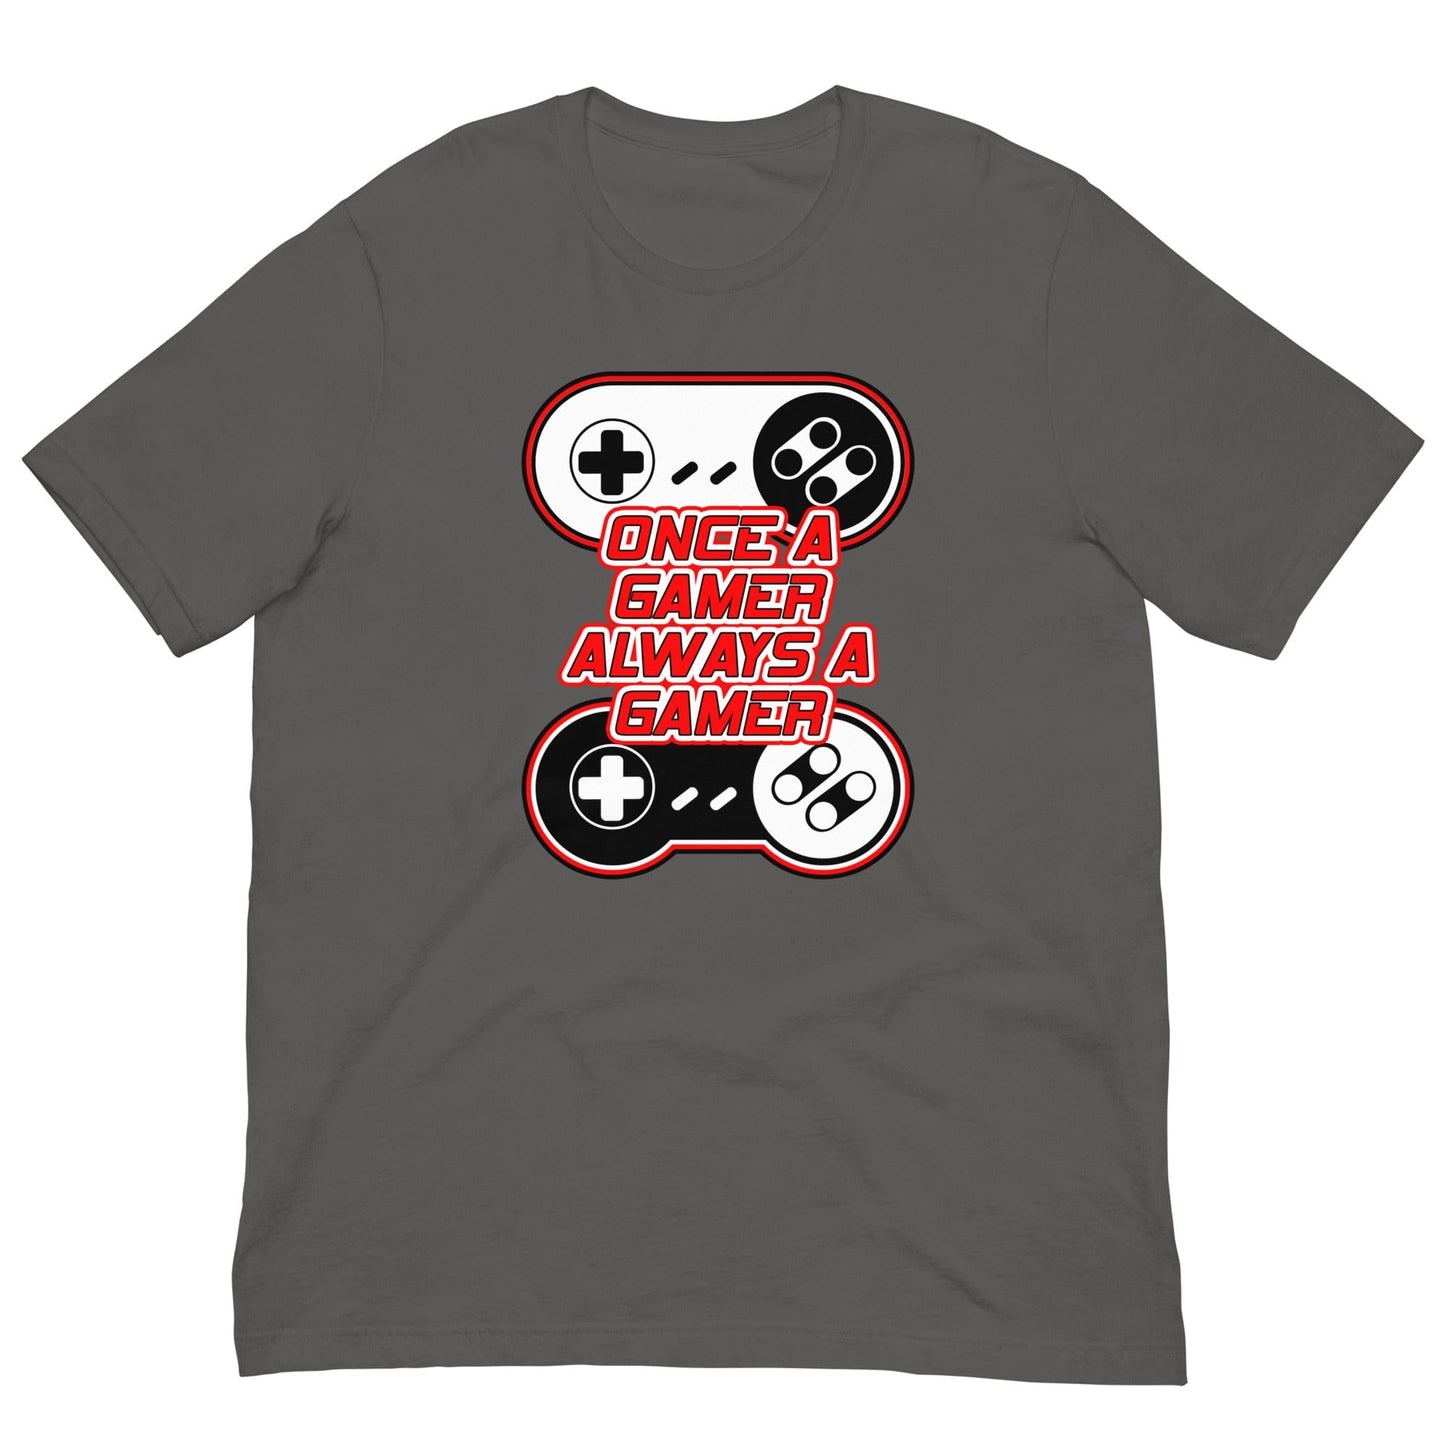 Gamer Forever T-shirt Asphalt / S